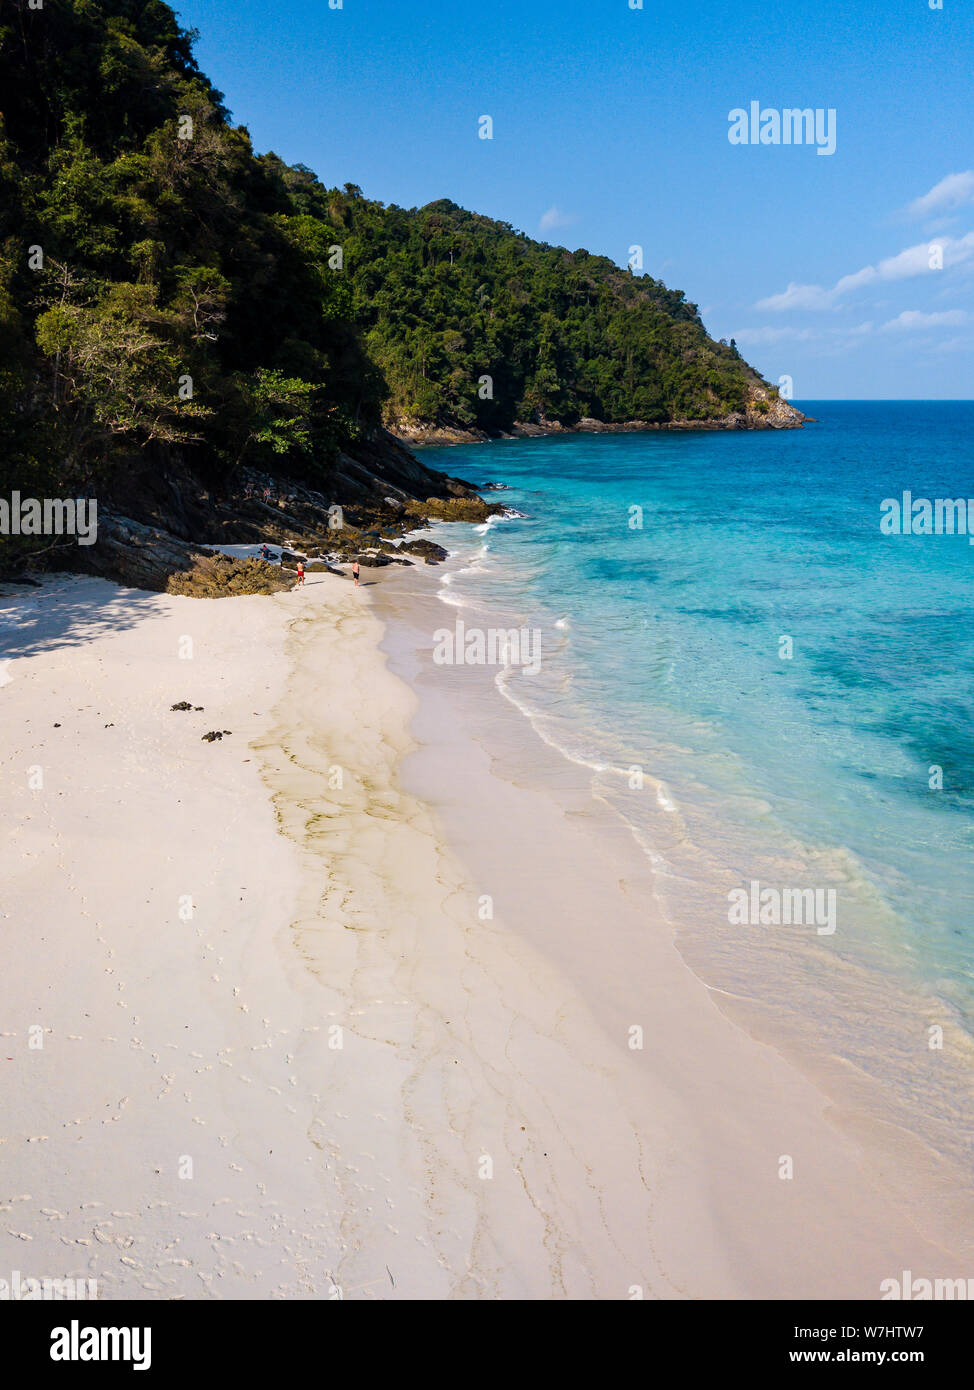 Antenne drone Blick auf einen wunderschönen Sandstrand von üppigen grünen Wald umgeben auf einer fernen tropischen Insel. Stockfoto